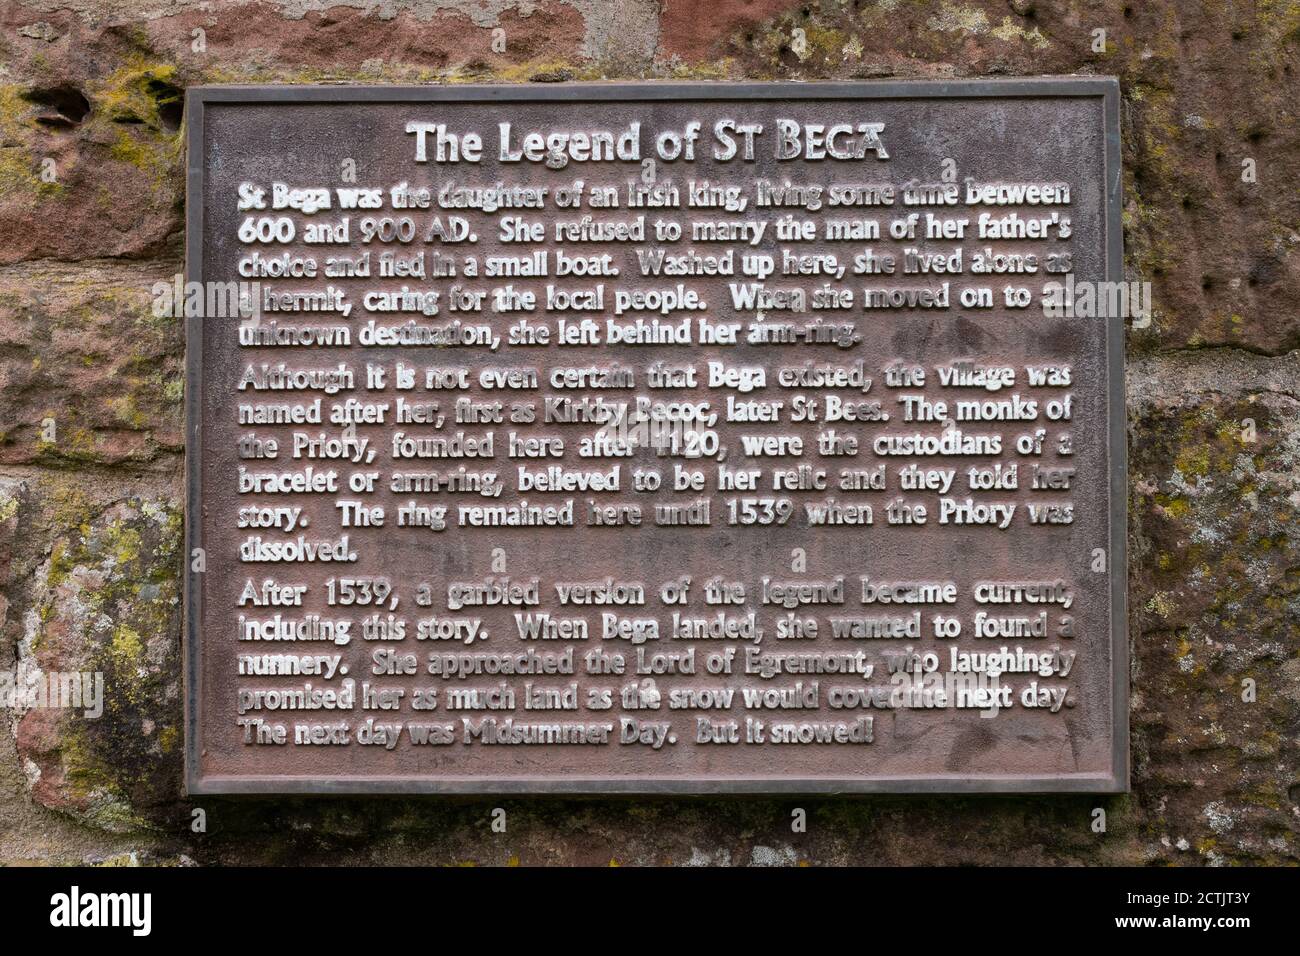 La Légende de St Bega plaque d'information sur la statue de St Bega, St Bees, Cumbria, Angleterre, Royaume-Uni Banque D'Images